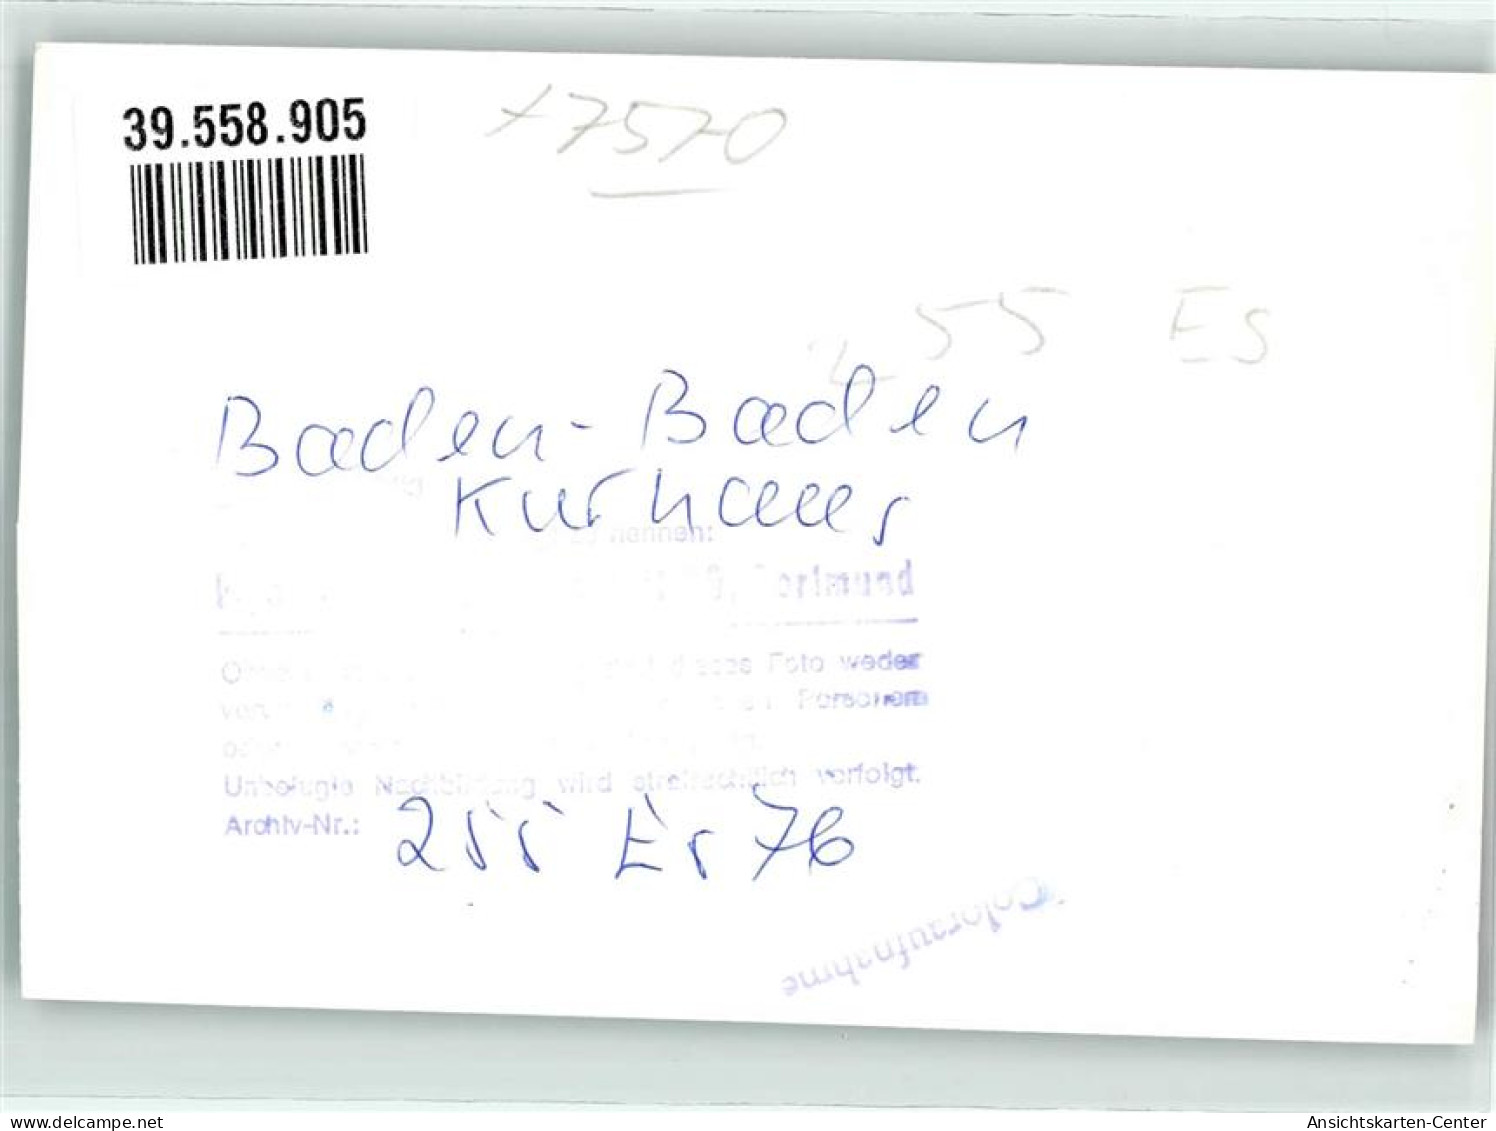 39558905 - Baden-Baden - Baden-Baden